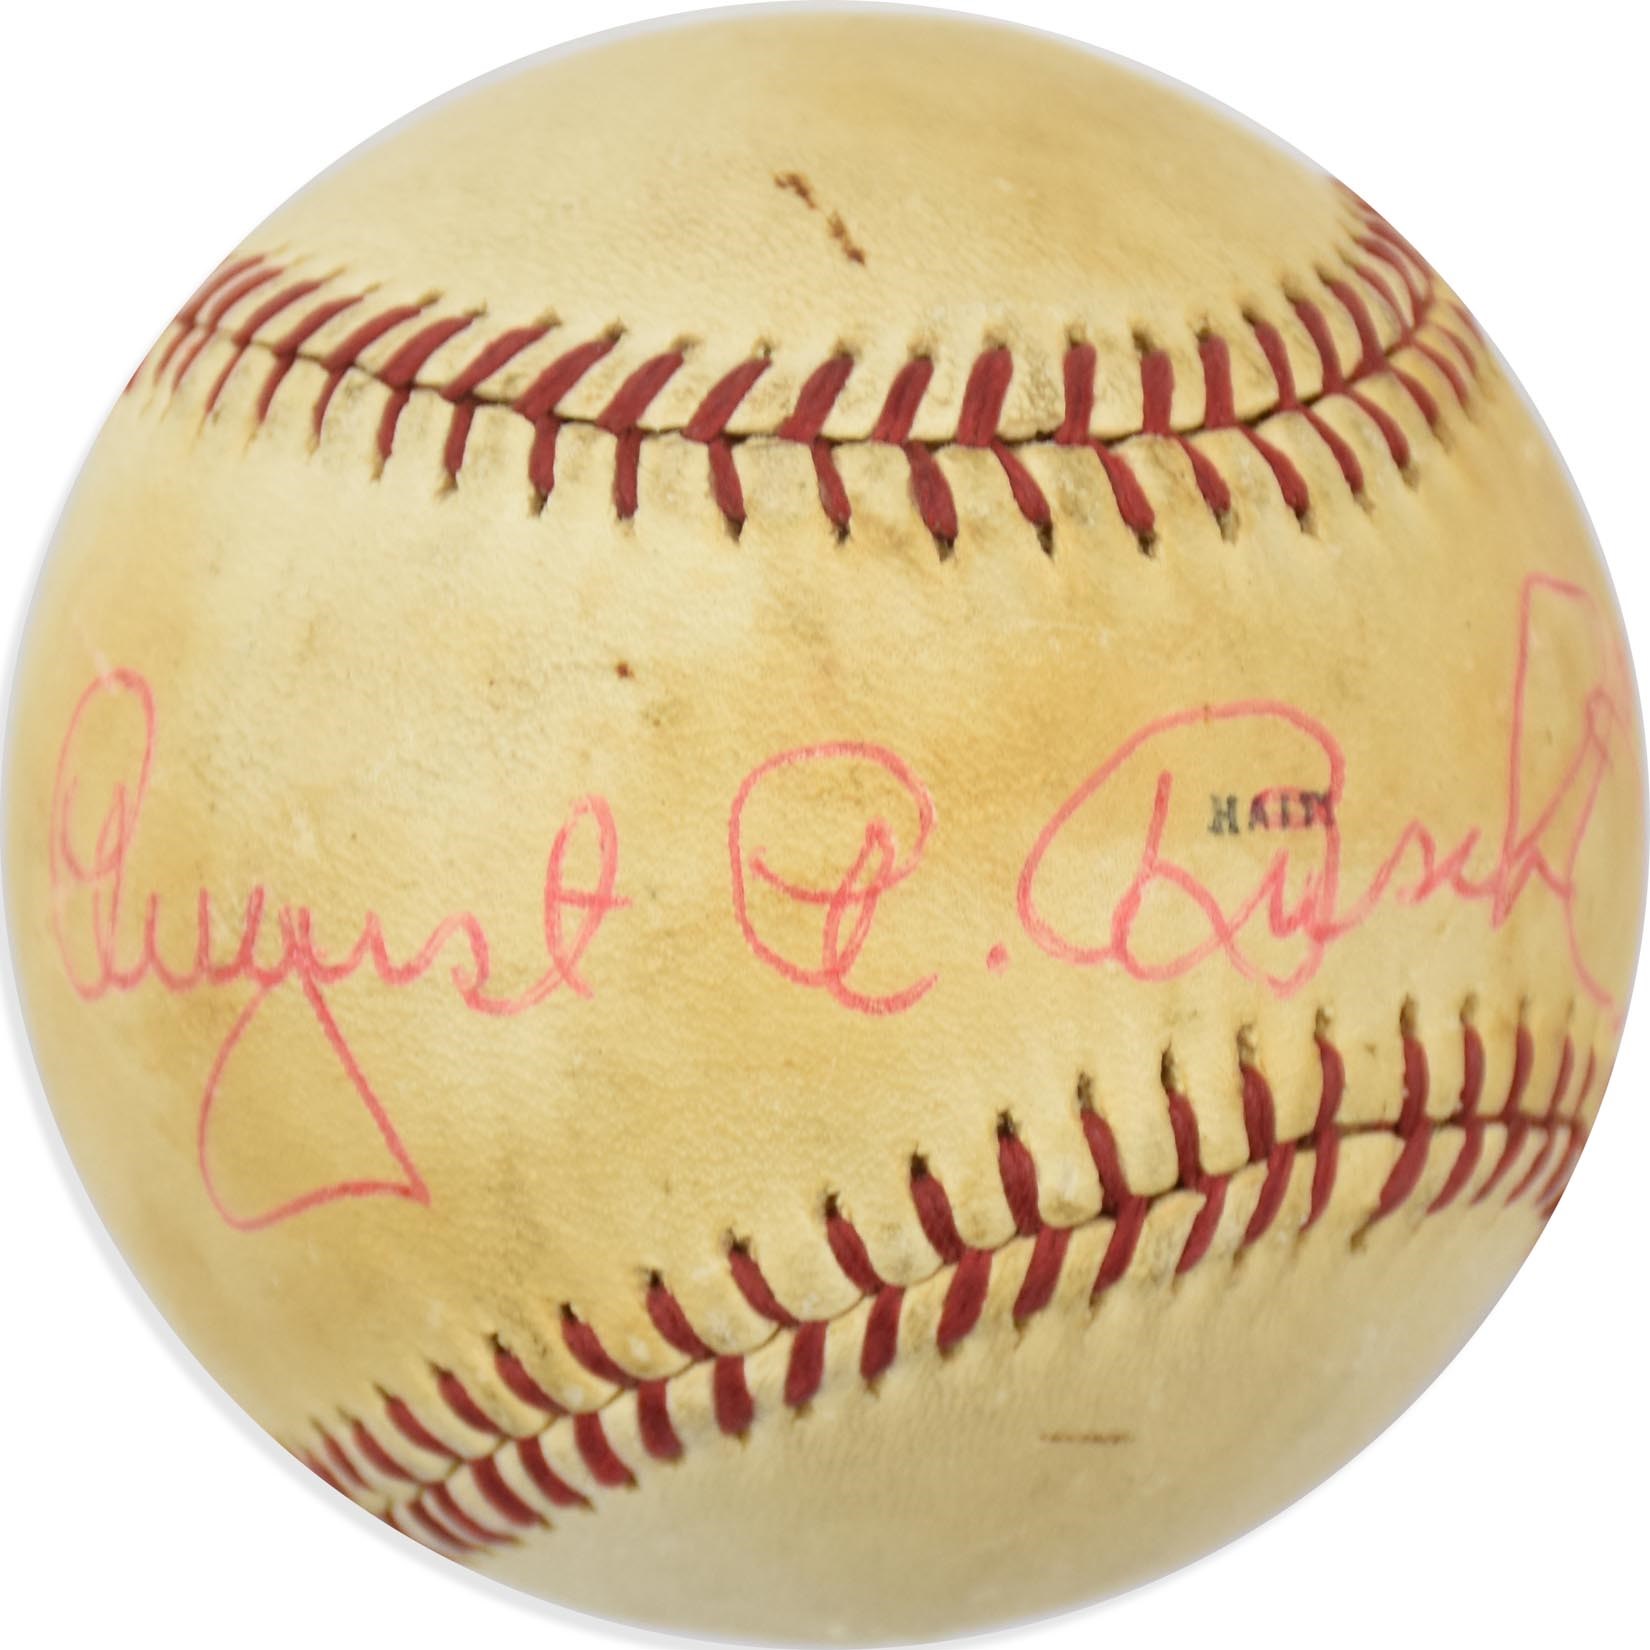 - August Busch Single-Signed Baseball (PSA)